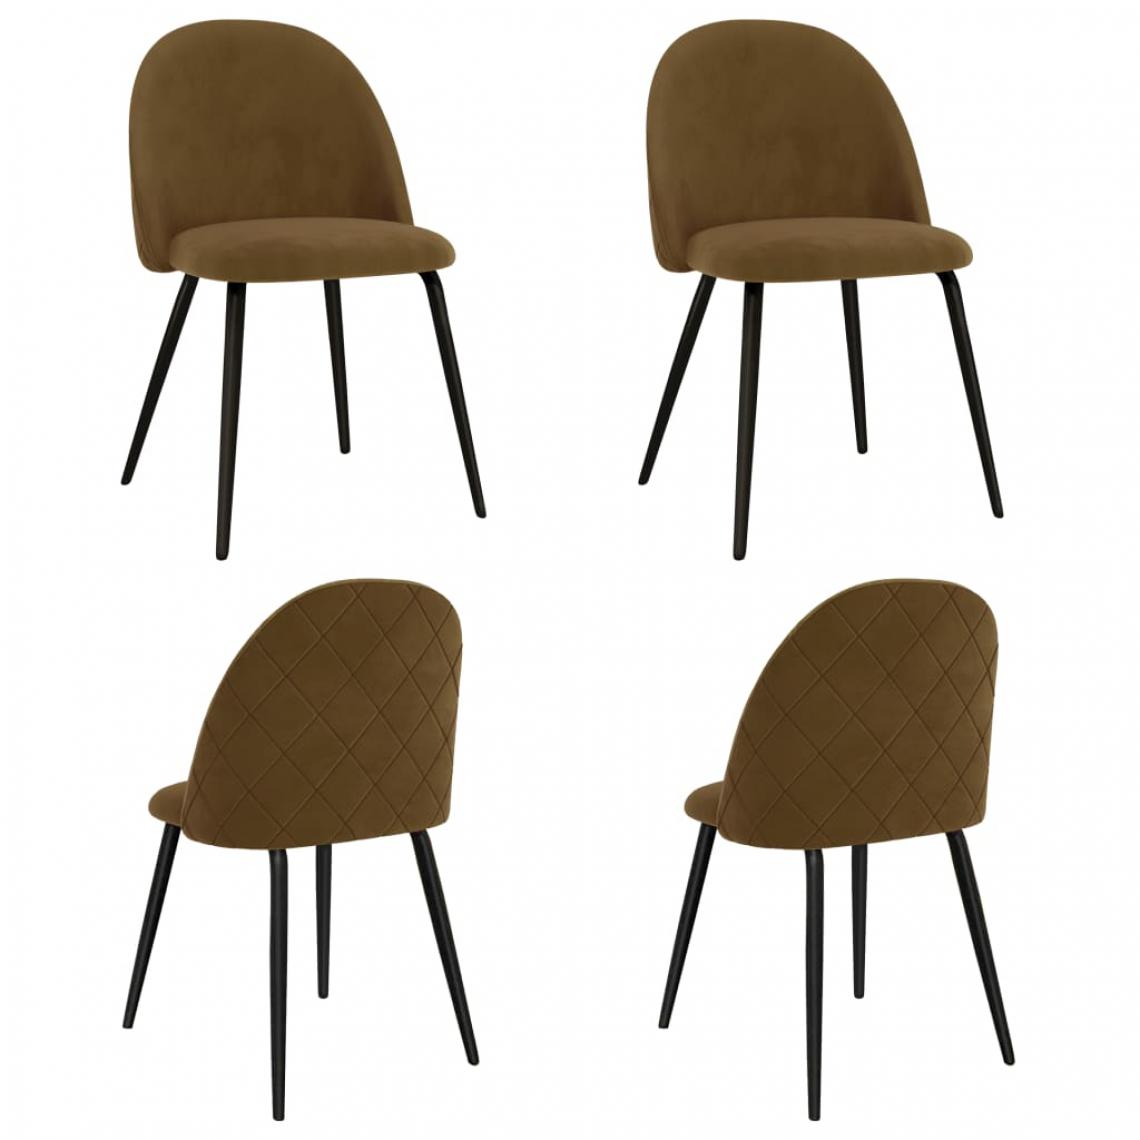 Icaverne - Splendide Fauteuils et chaises gamme Kingstown Chaises de salle à manger 4 pcs Marron Tissu - Chaises